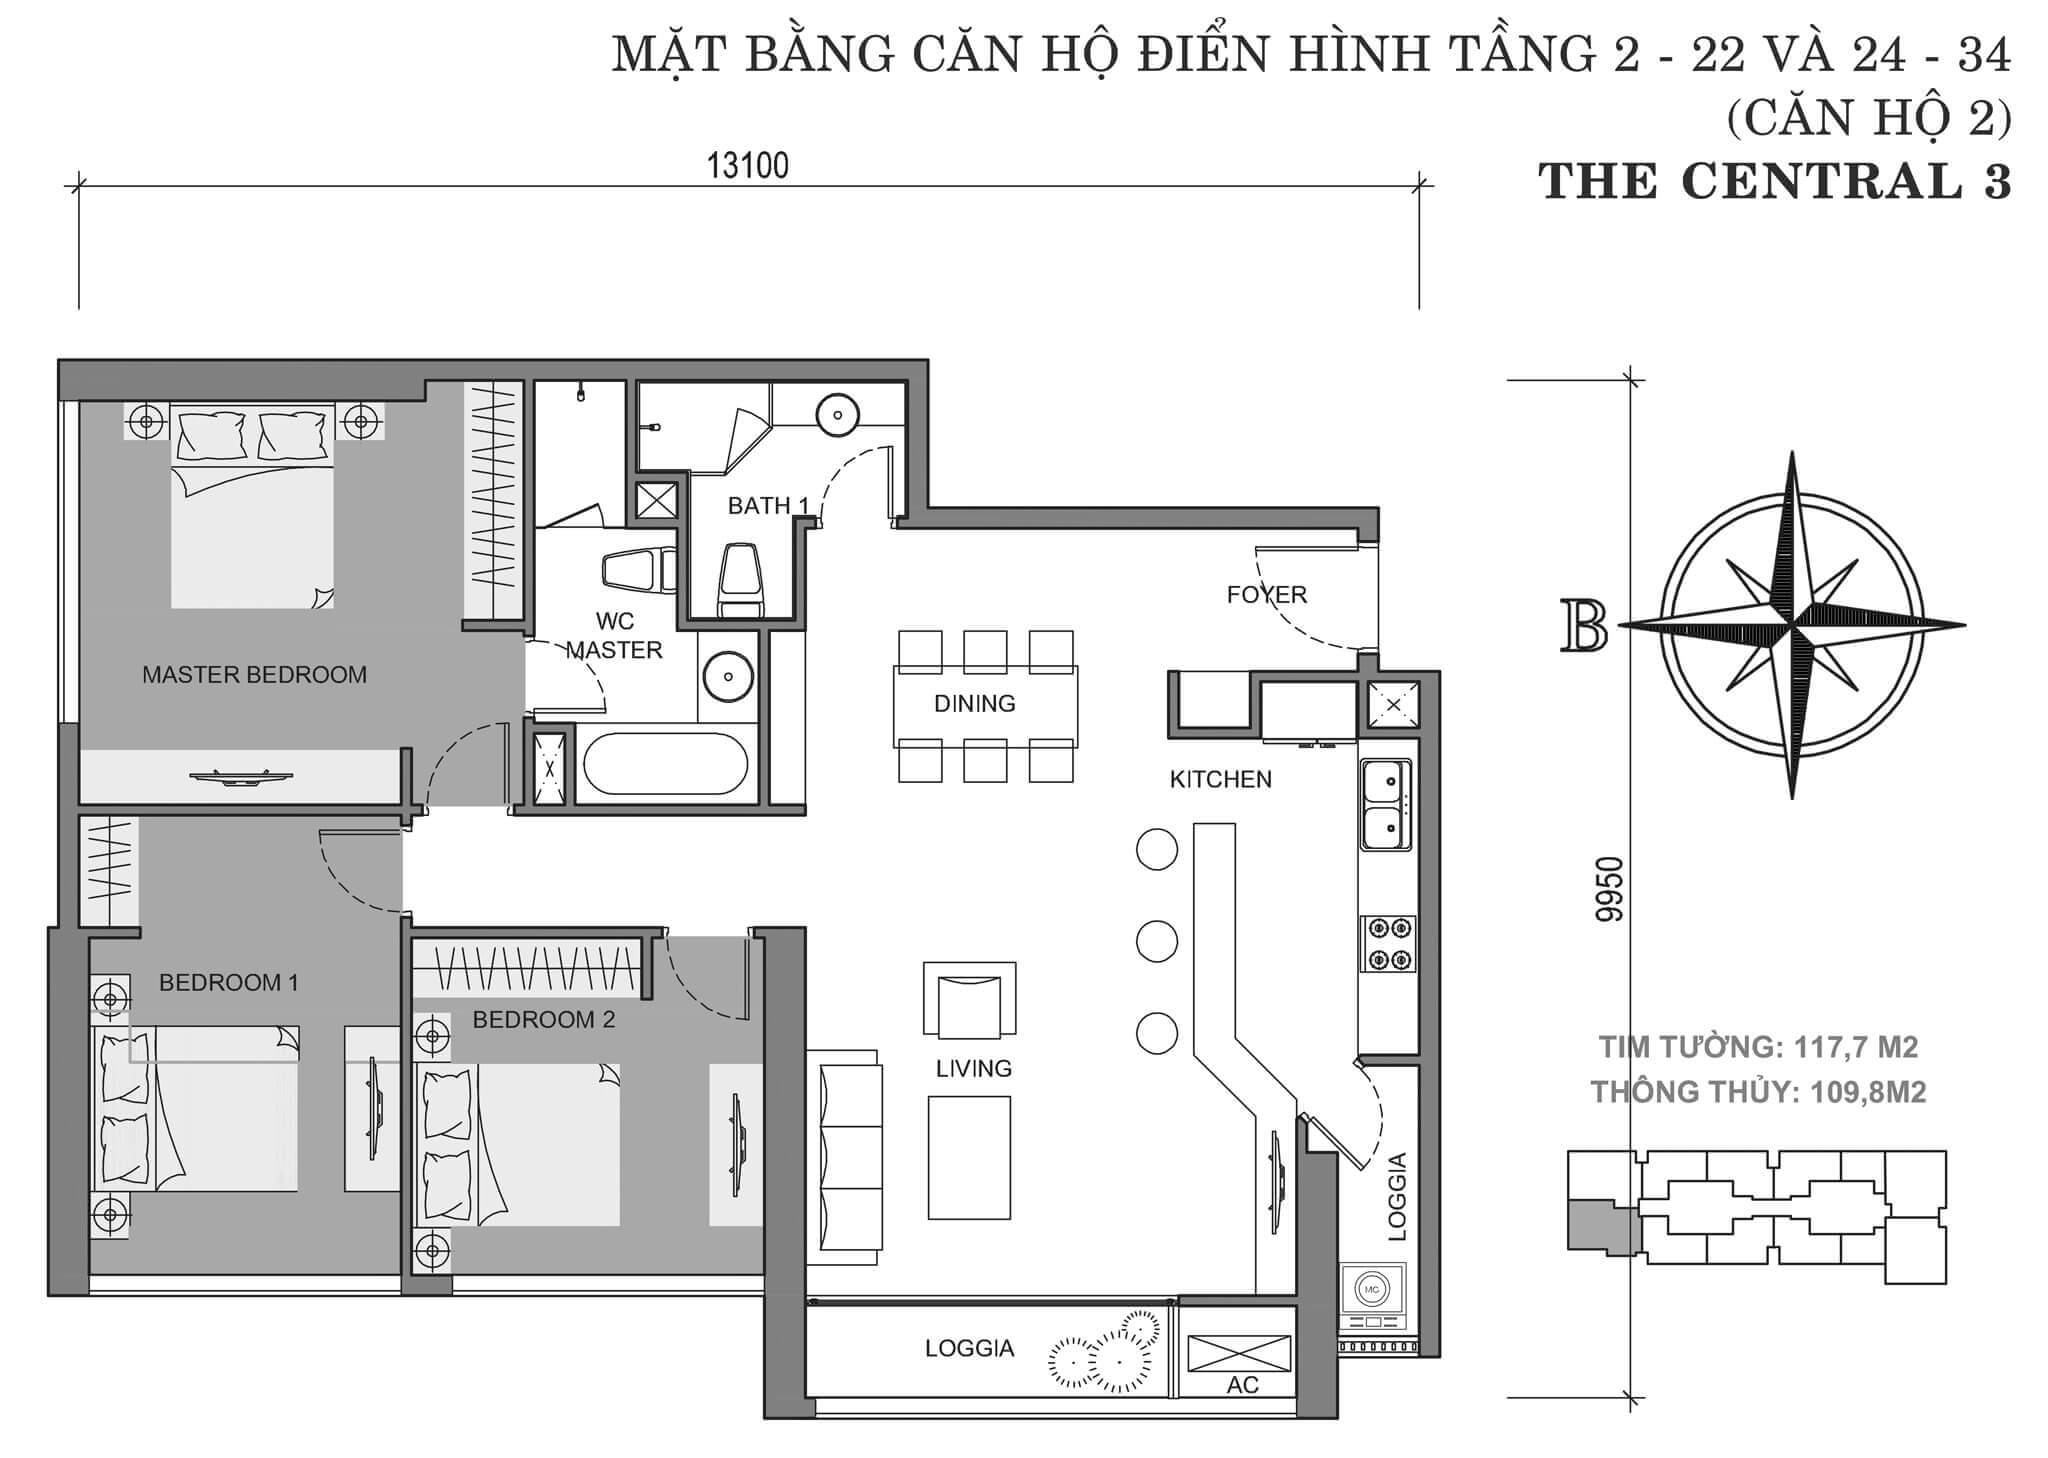 layout căn hộ số 2 tòa Central 3 tầng 2-34  